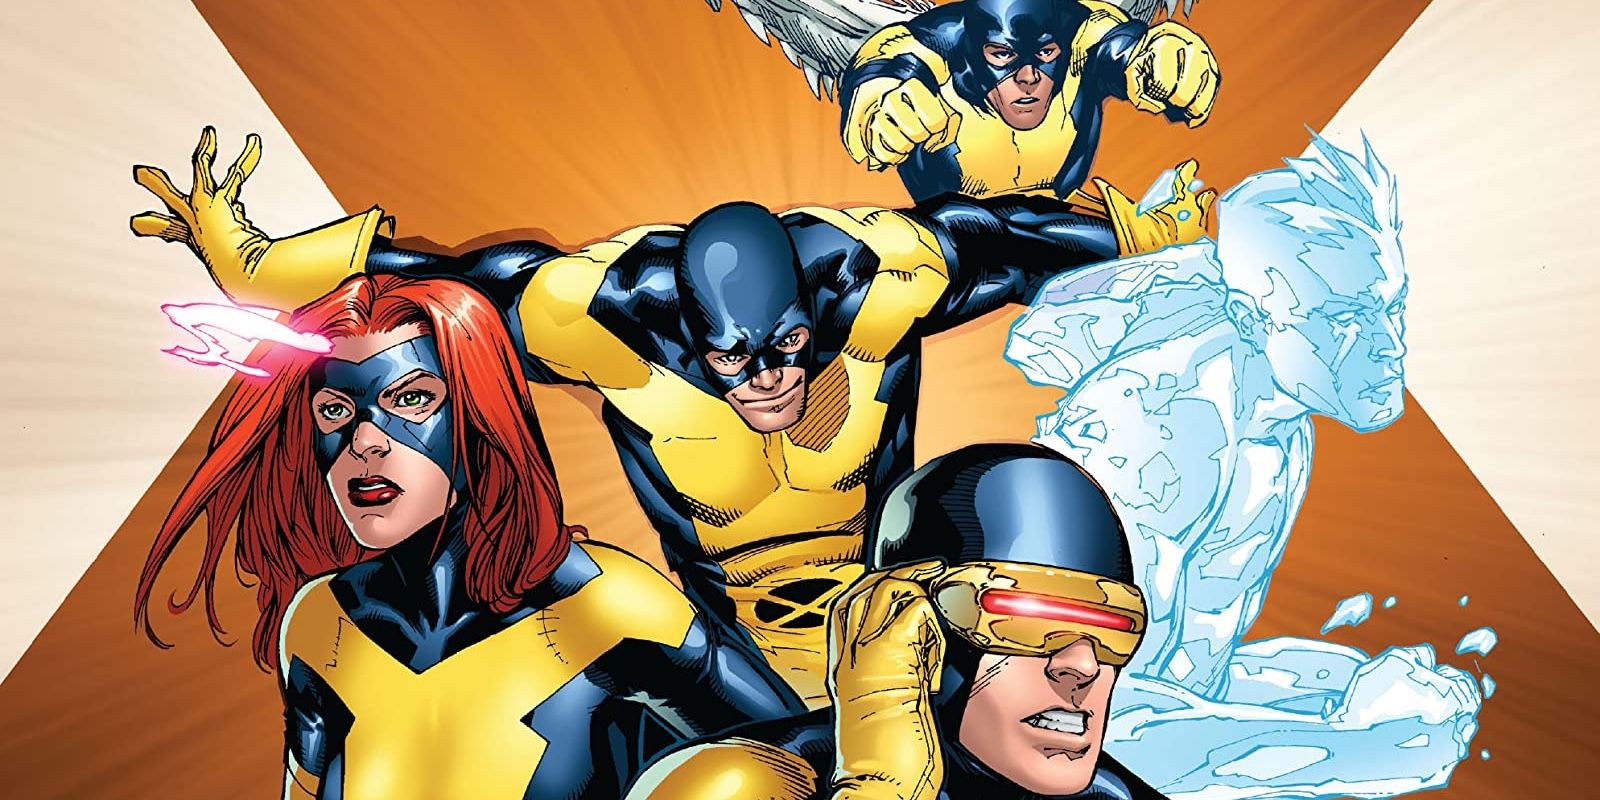 The Original X-Men Team